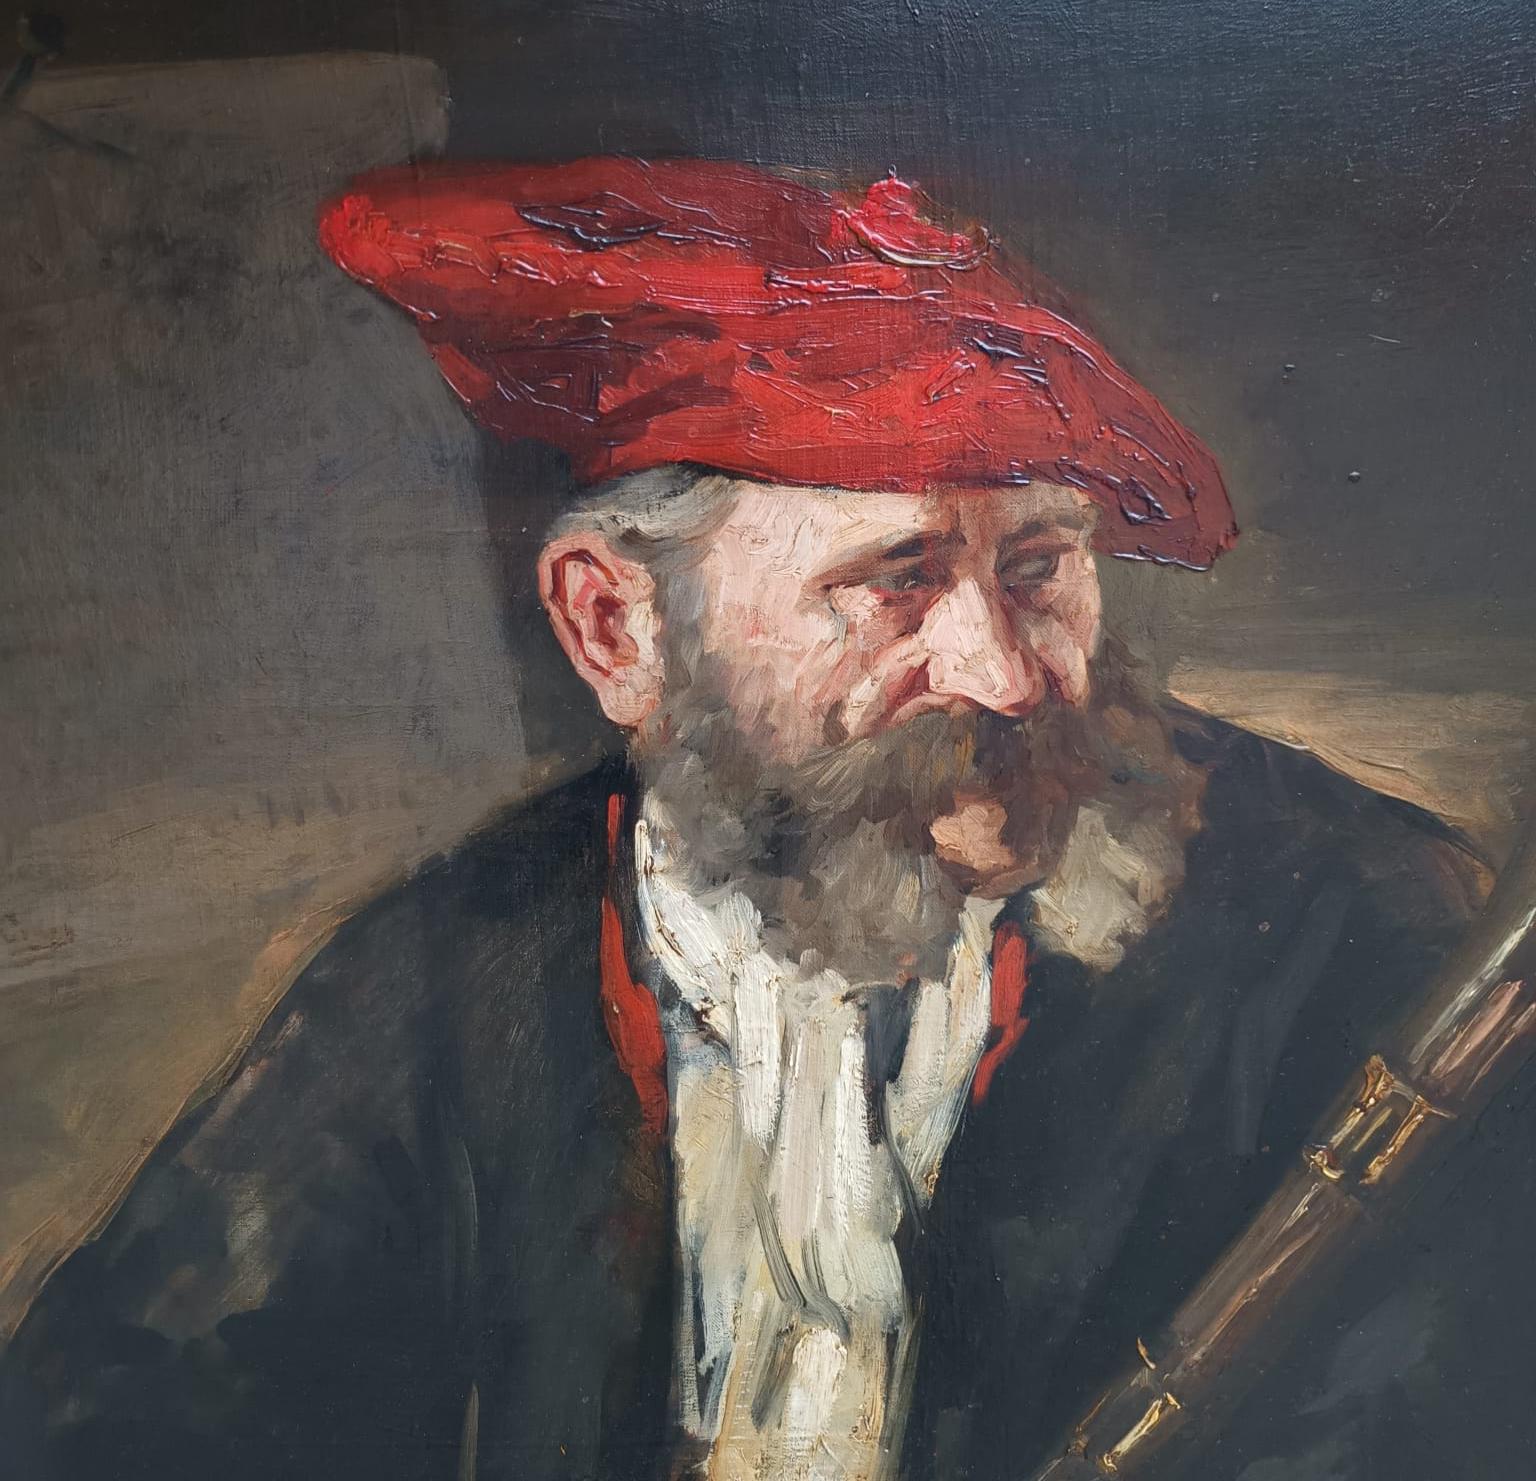 R.H. Craig
(hauptsächlich in den 1880er Jahren im Vereinigten Königreich tätig)
Porträt eines Jägers, 1920 ca.
Öl auf Leinwand cm. 85x66
innerhalb des Rahmens für cm. 92x74
Signiert unten links
Signiert oben links

Das Gemälde in ausgezeichnetem